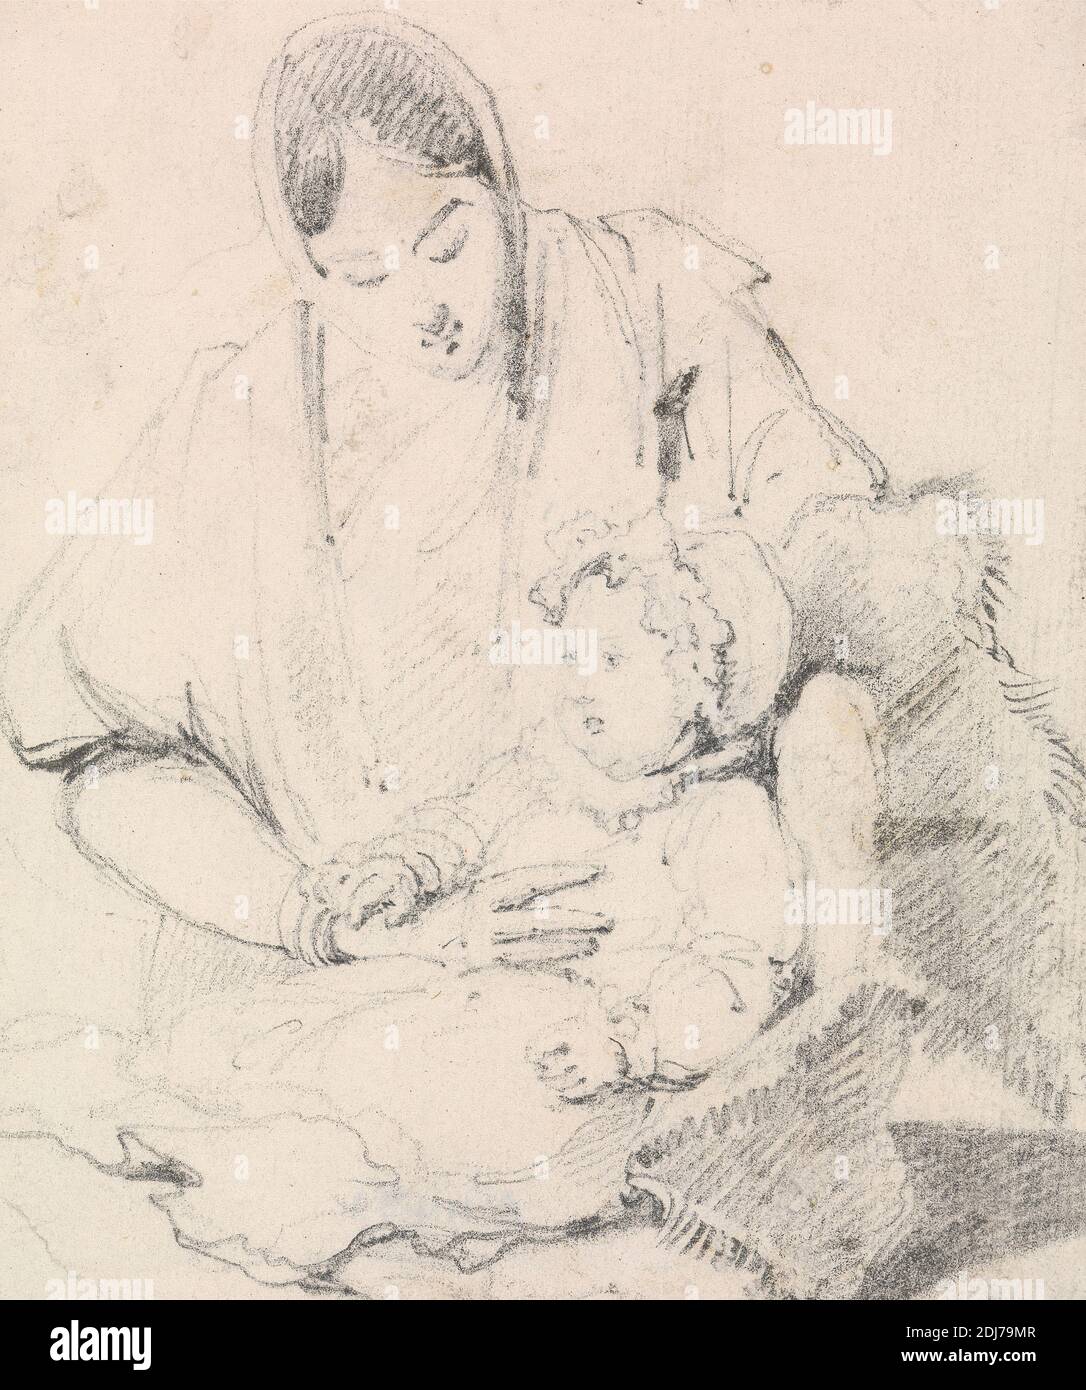 Jeune infirmière indienne avec enfant anglais, George Chinnery, 1774–1852, britannique, non daté, Graphite sur papier vélin blanc, légèrement texturé, feuille: 4 5/8 × 4 pouces (11.7 × 10.2 cm), enfant, étude de figure, infirmière Banque D'Images